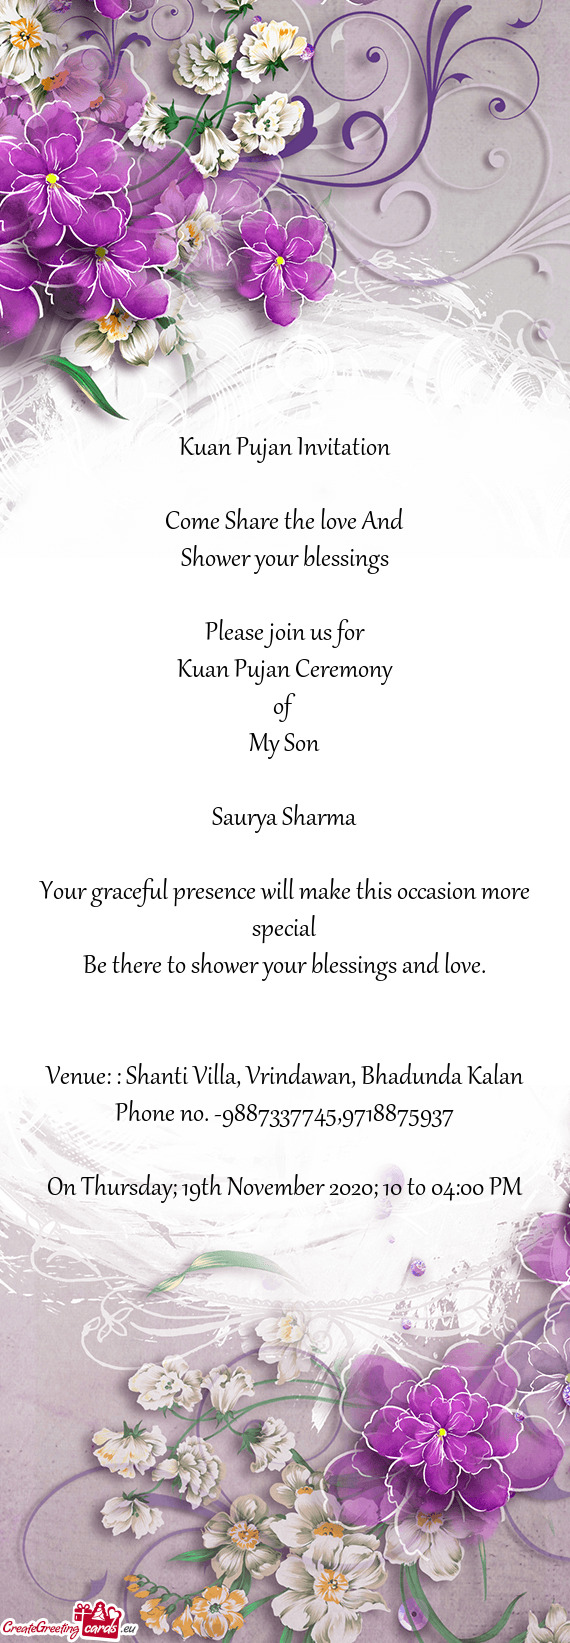 Venue: : Shanti Villa, Vrindawan, Bhadunda Kalan